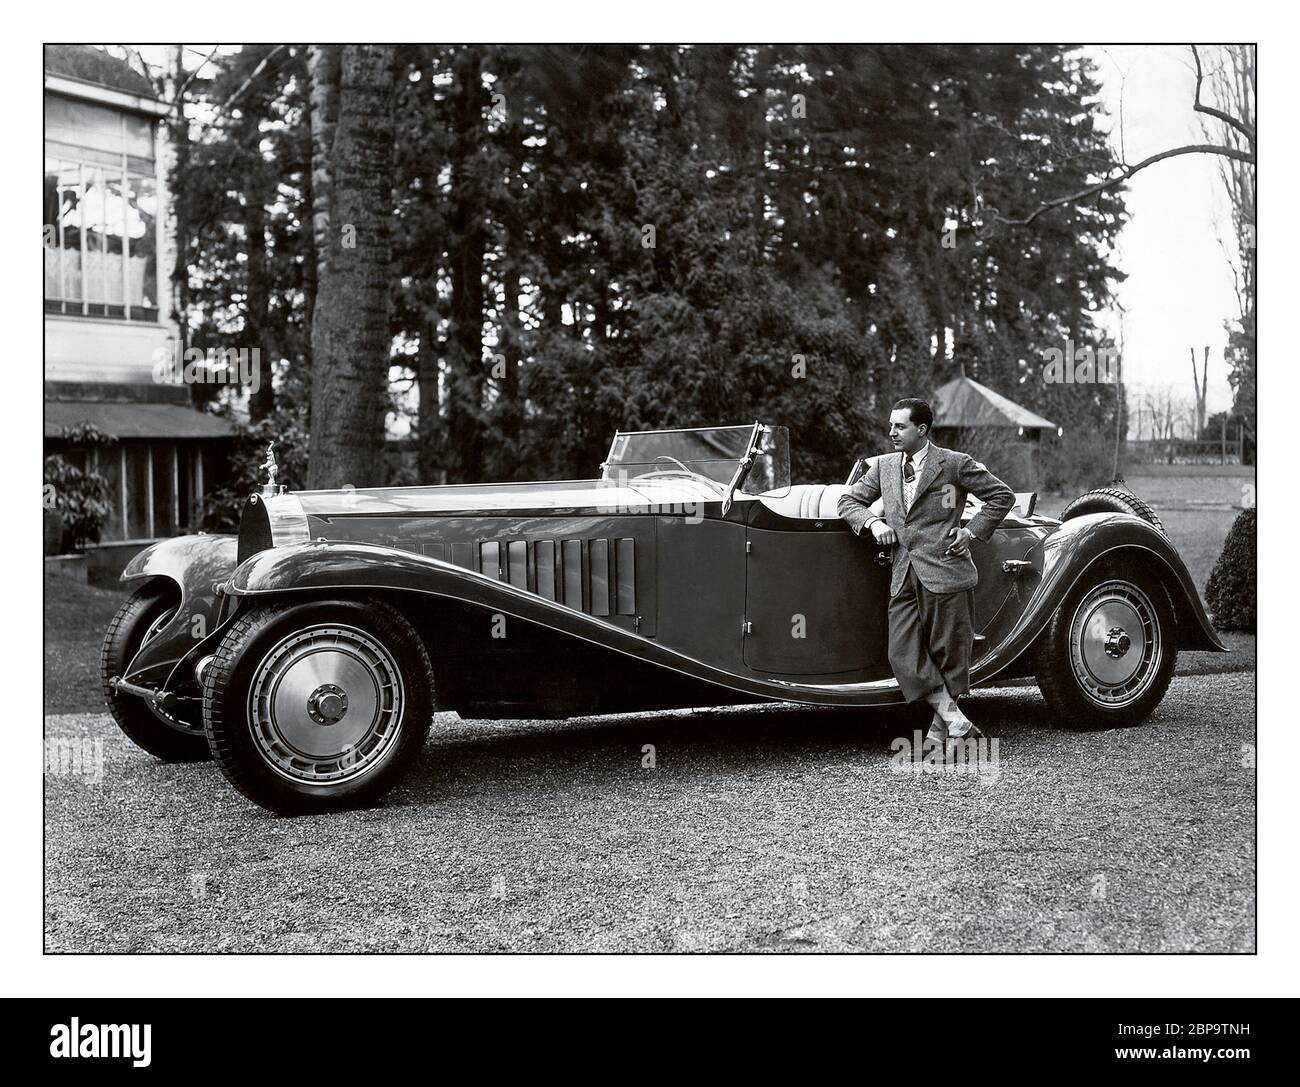 Vintage Bugatti Type 41 Royale Esders Roadster, archivo 1927 con Jean Bugatti junto al Bugatti Type 41, mejor conocido como el Royale, es un gran coche de lujo construido de 1927 a 1933 con una distancia entre ejes de 4.3 m (169.3 pulg) y una longitud total de 6.4 m (21 pies). Pesa aproximadamente 3,175 kg (7,000 lb) y utiliza un motor recto de ocho cilindros de 12.763 litros (778 pulg.cu). El Royale es uno de los coches más grandes del mundo. Jean Bugatti fue un diseñador de automóviles francés e ingeniero de pruebas. Nacido Gianoberto María Carlo Bugatti en Colonia, fue el hijo mayor de Ettore Bugatti. Foto de stock